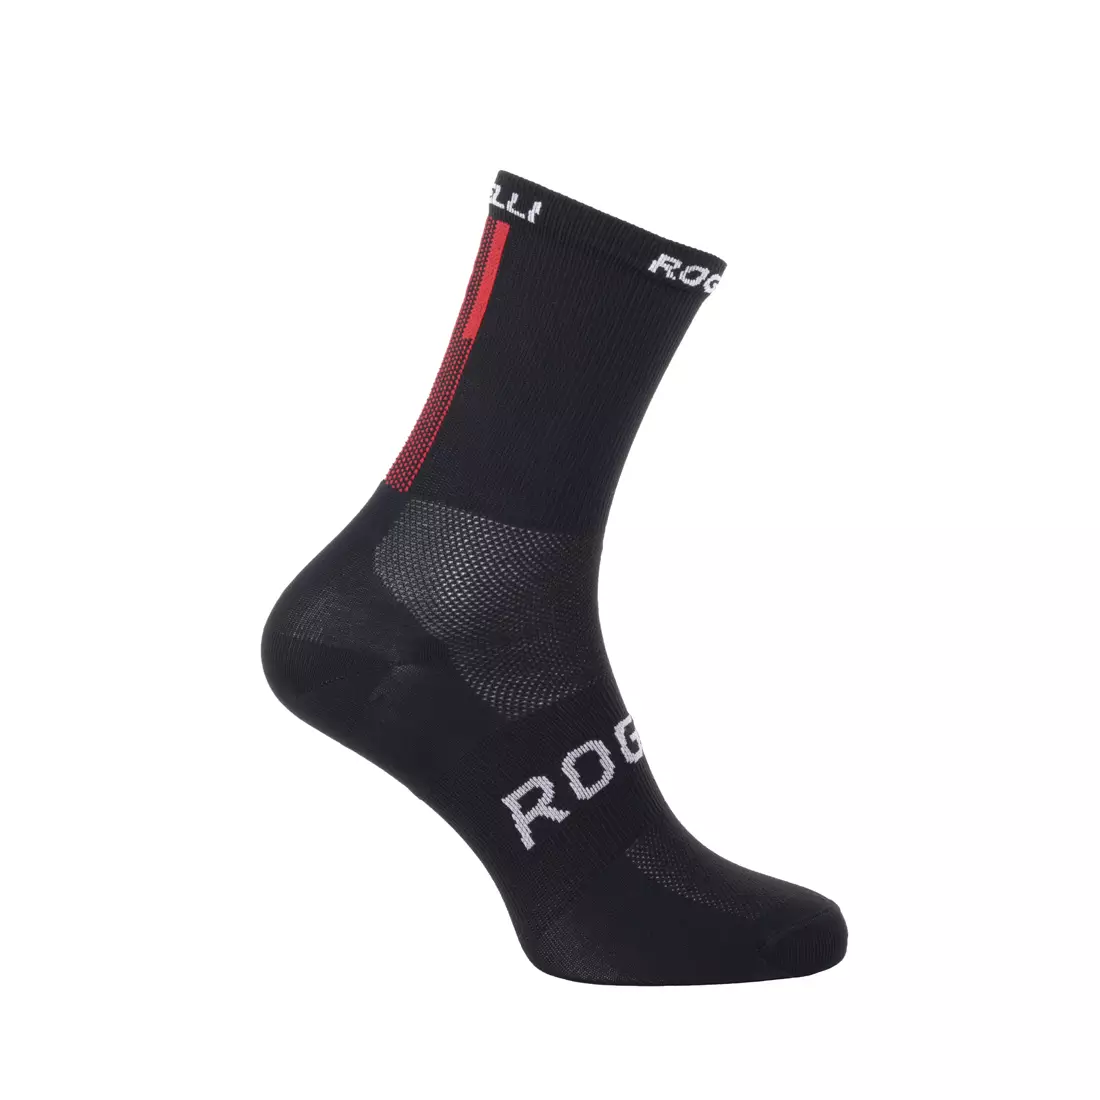 ROGELLI TEAM 2.0 cyklistické športové ponožky, čierne